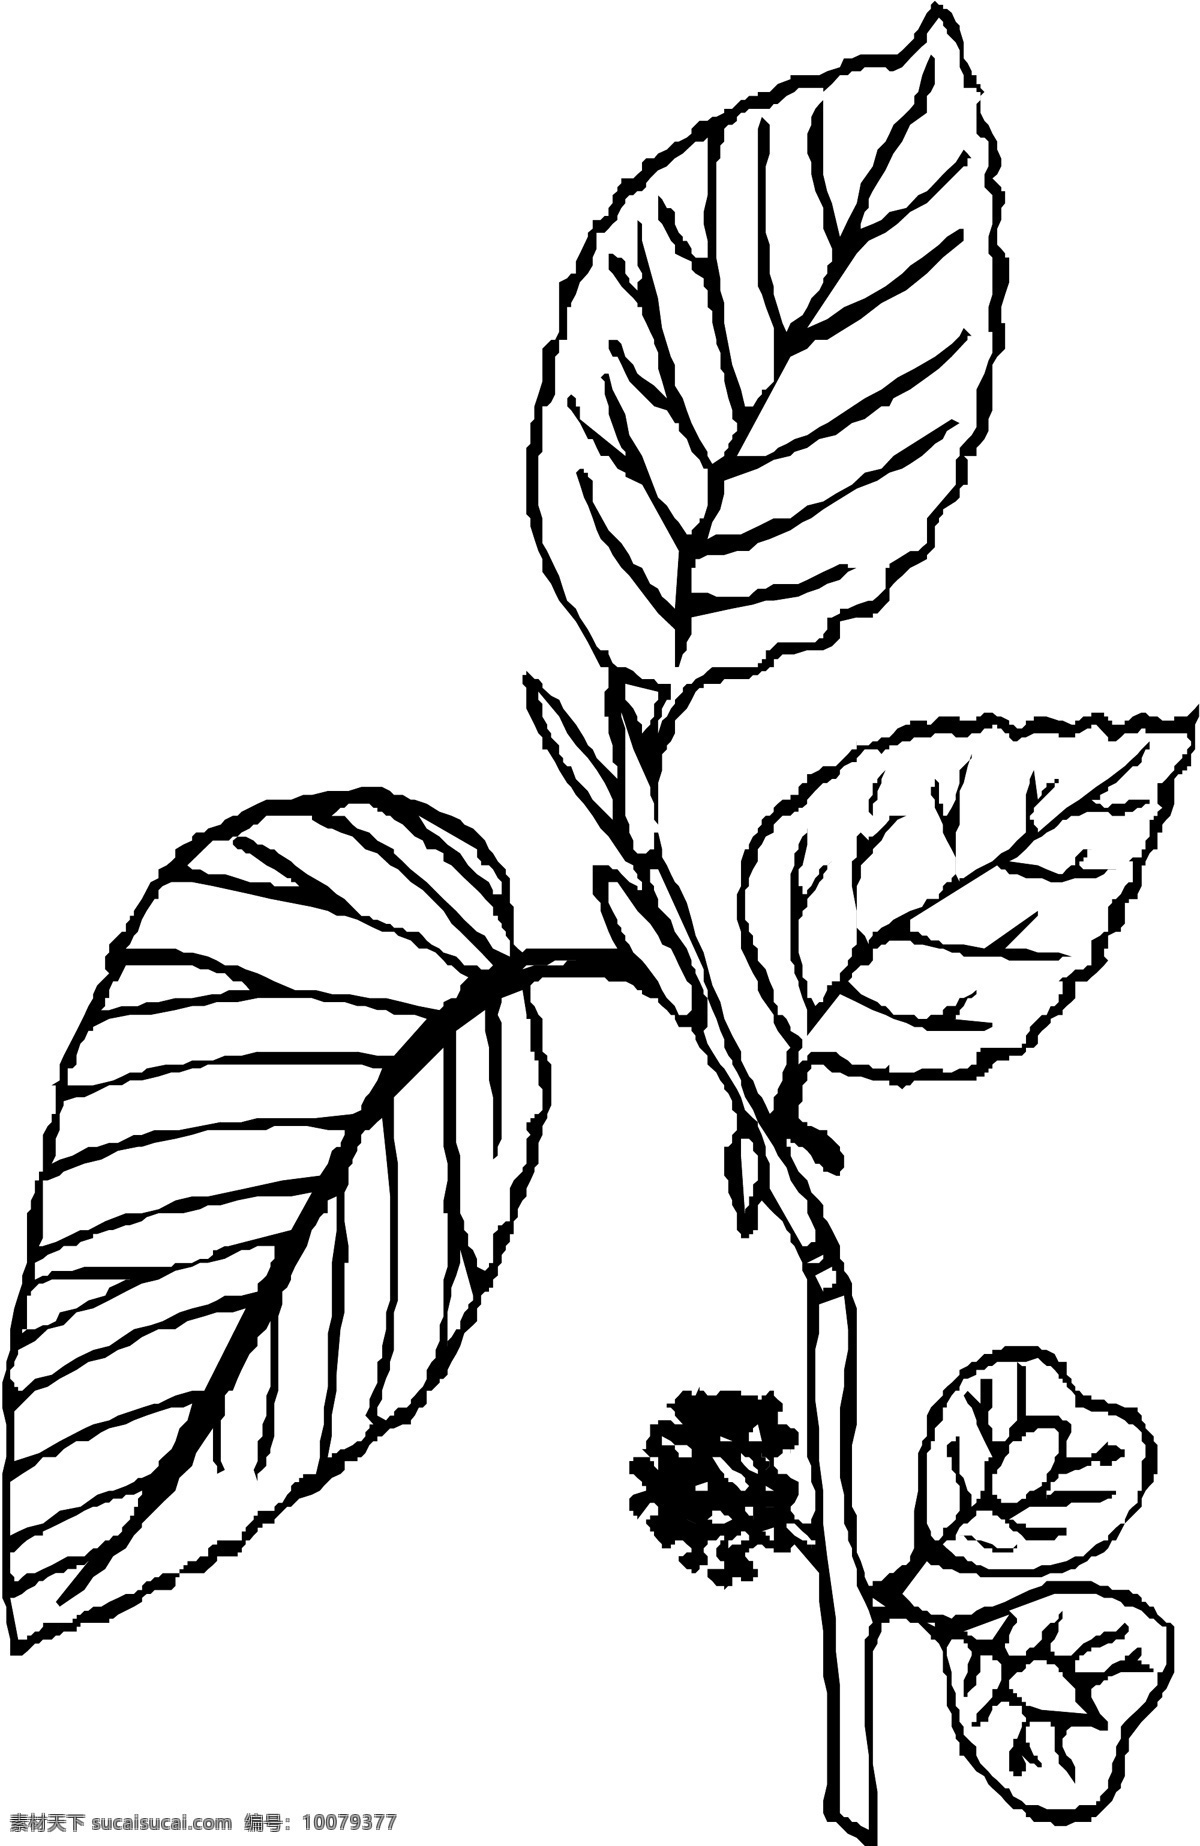 花草 矢量植物 矢量 eps0221 设计素材 叶的世界 矢量图库 白色